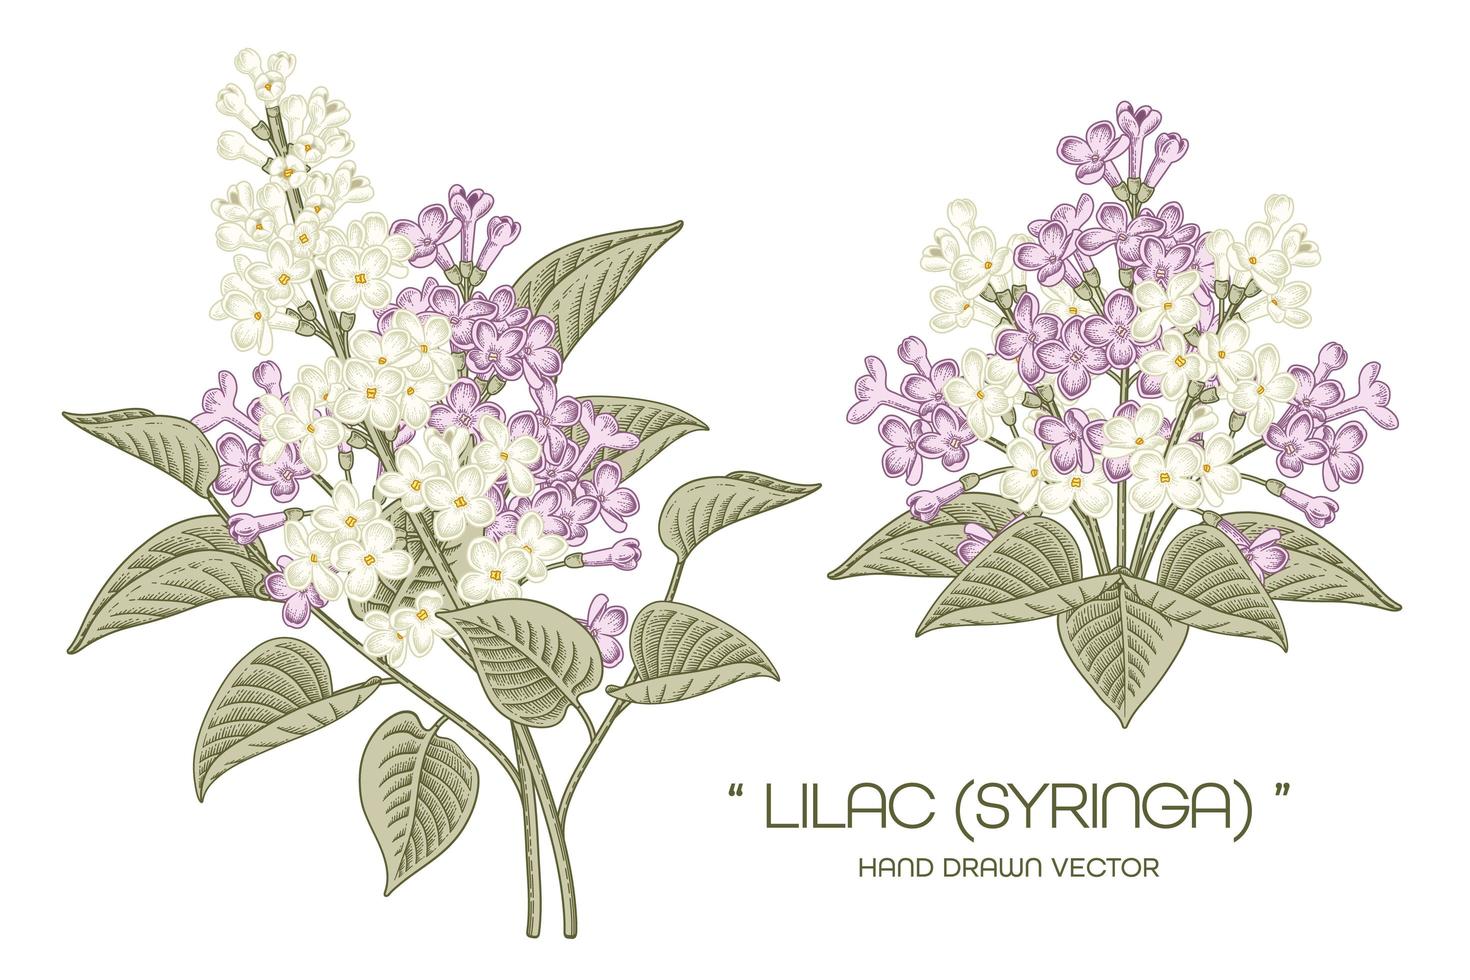 ramo de syringa vulgaris blanco y morado o flor lila común ilustraciones dibujadas a mano vintage vector